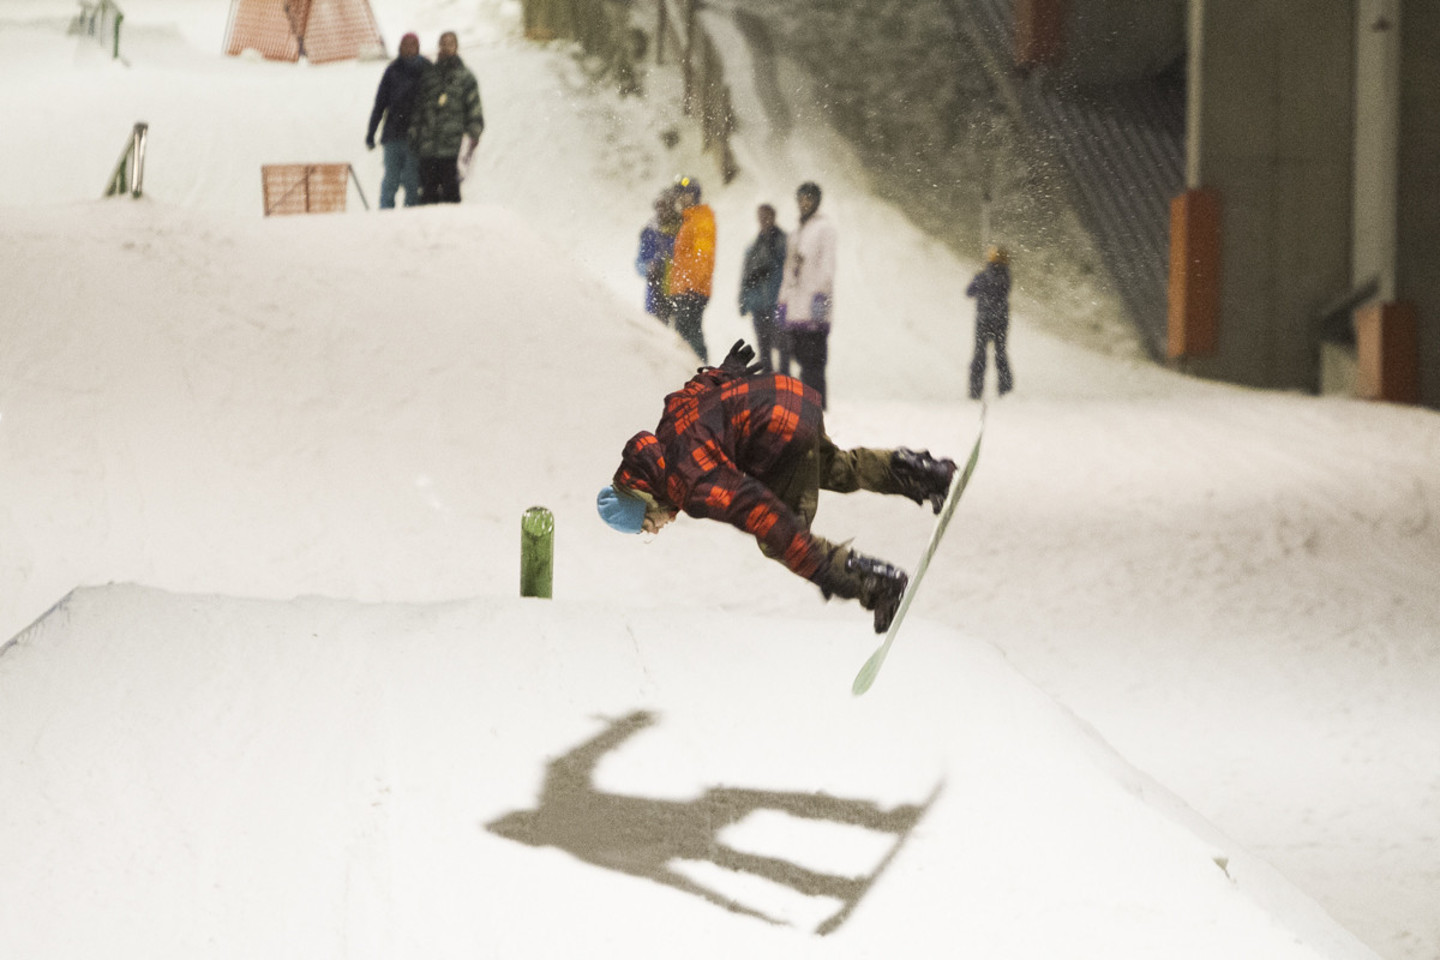 Po „Snow Summer JAM 2015“ varžybų vyks naktinis slidinėjimo seansas, veiks naktinė kartingų trasa ir bus galima išbandyti ekstremalų šuolį nuo „Snow Arenos“ stogo.